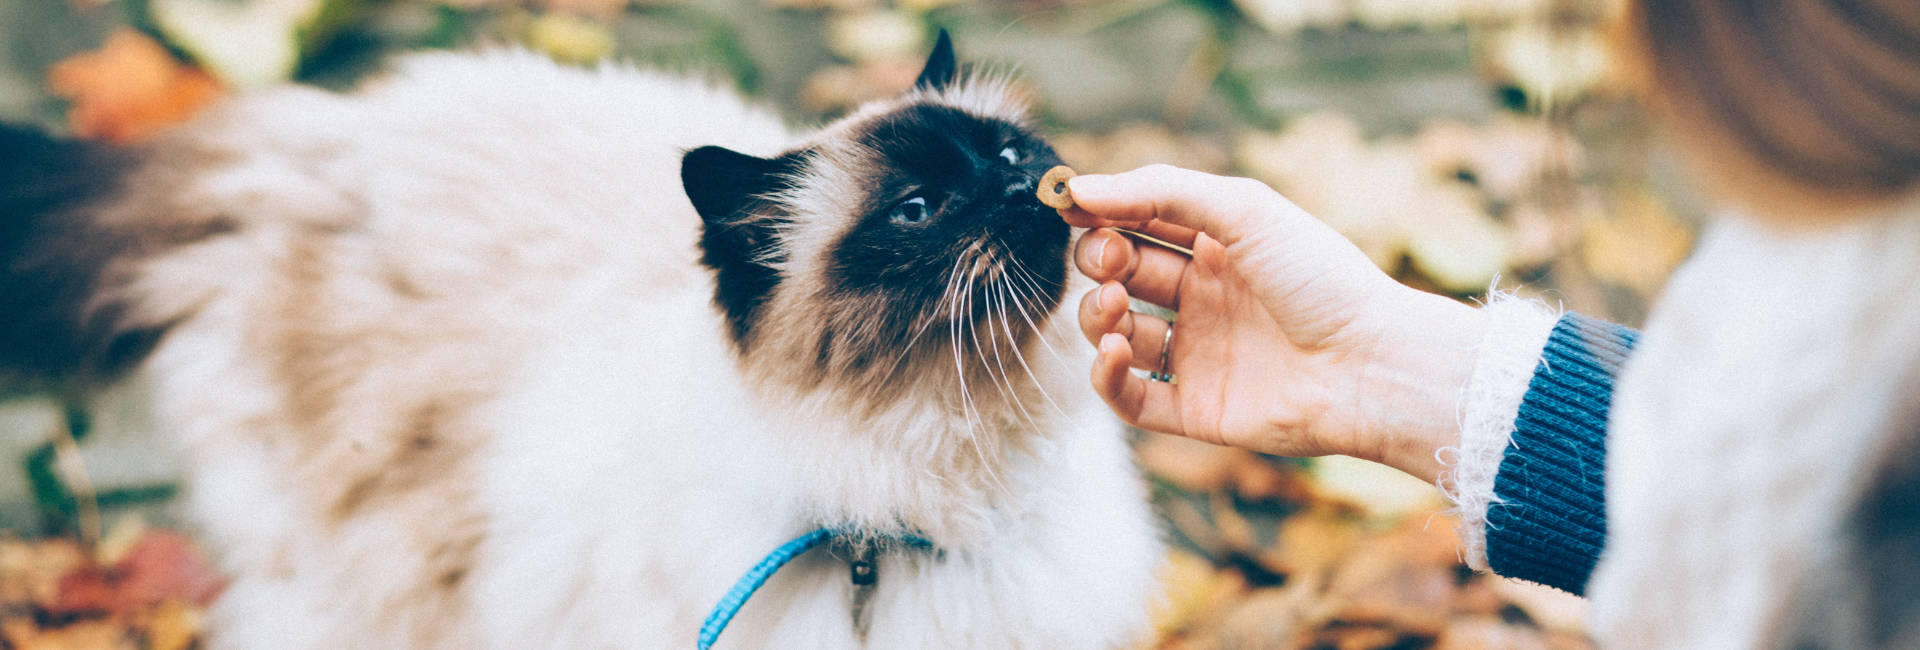 Tierhalterin füttert Katze mit Leckerli